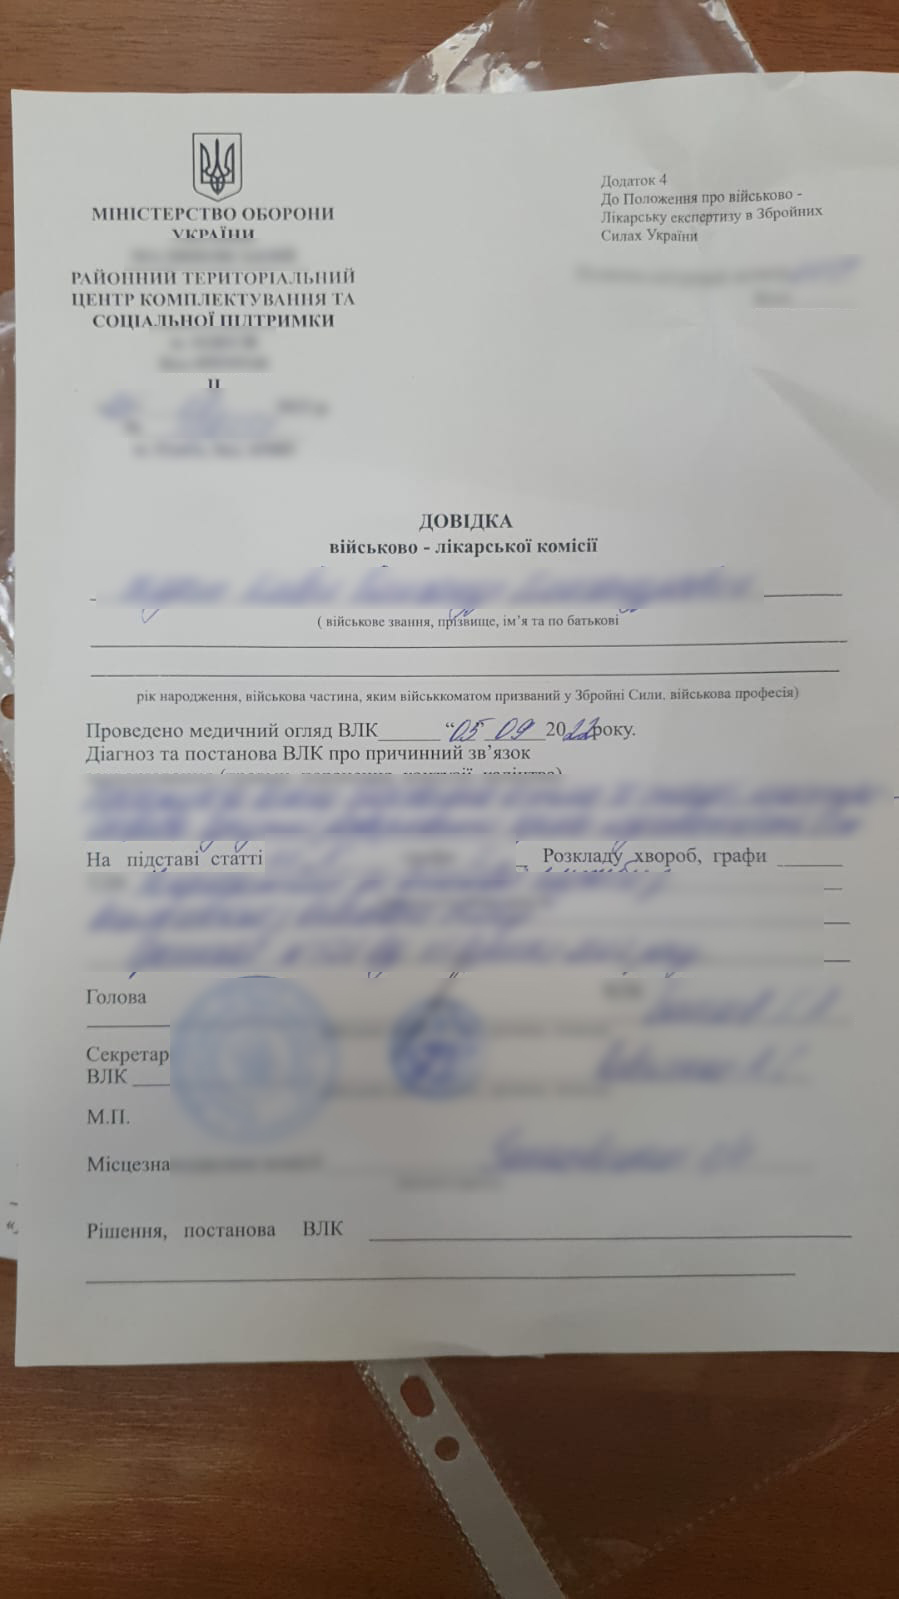 Уклонист попытался пересечь границу в Орловке по фальшивому удостоверению, а заработал сразу на два уголовных производства